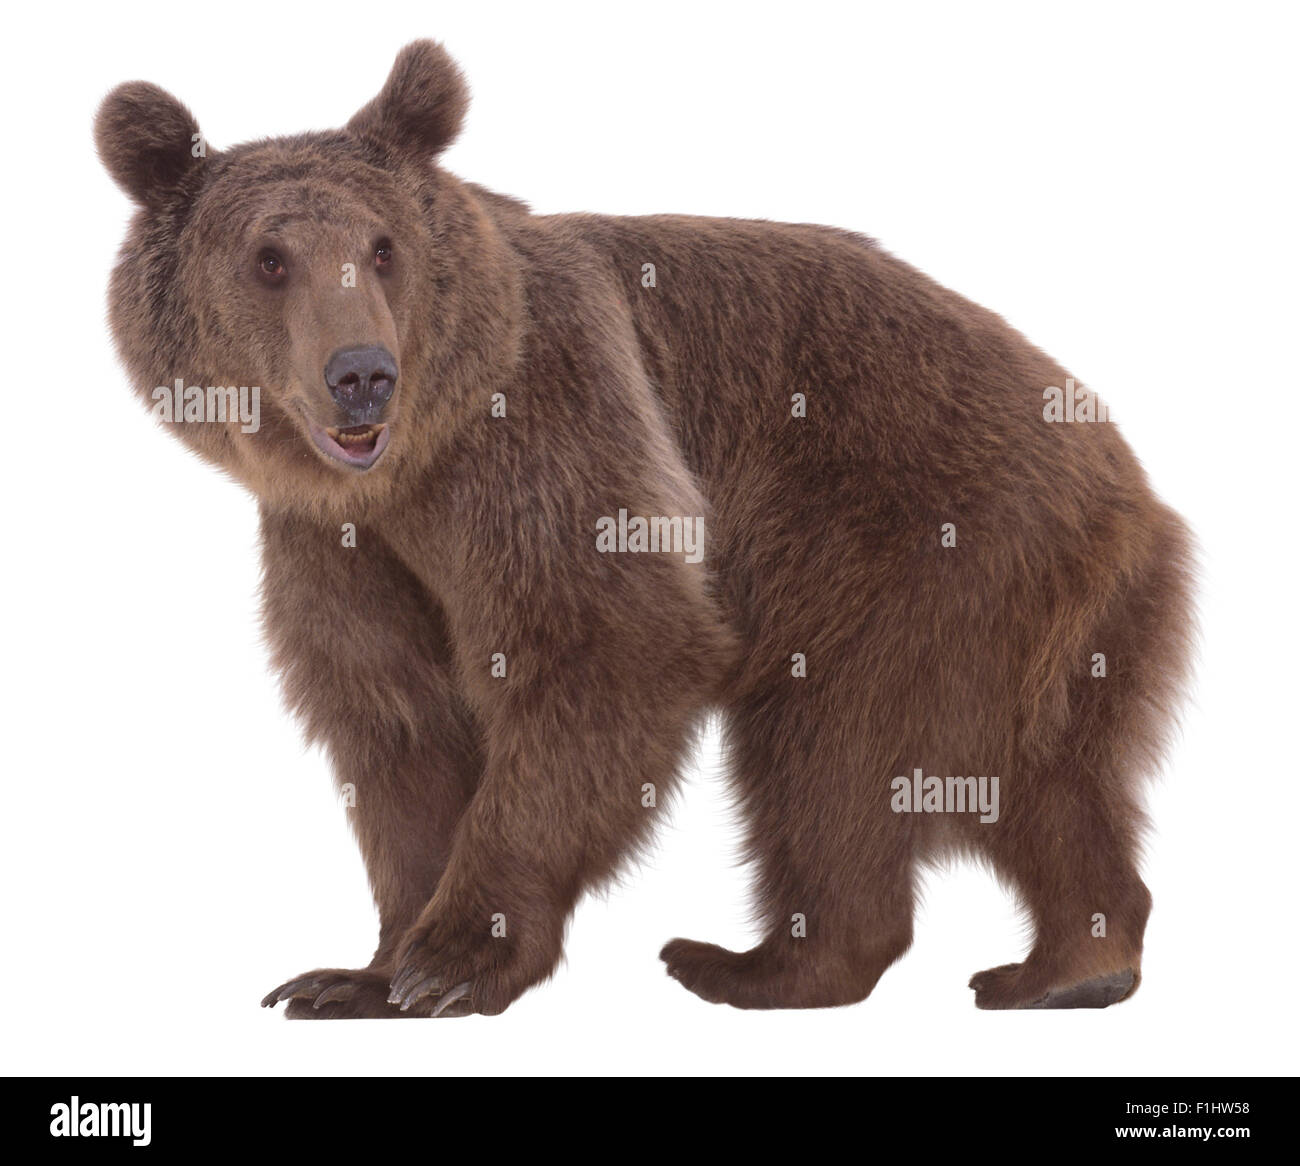 Ursus arctos (Brown bear). Family Ursidae. Subspecies Ursus arctos arctos, a Syrian Brown Bear Stock Photo